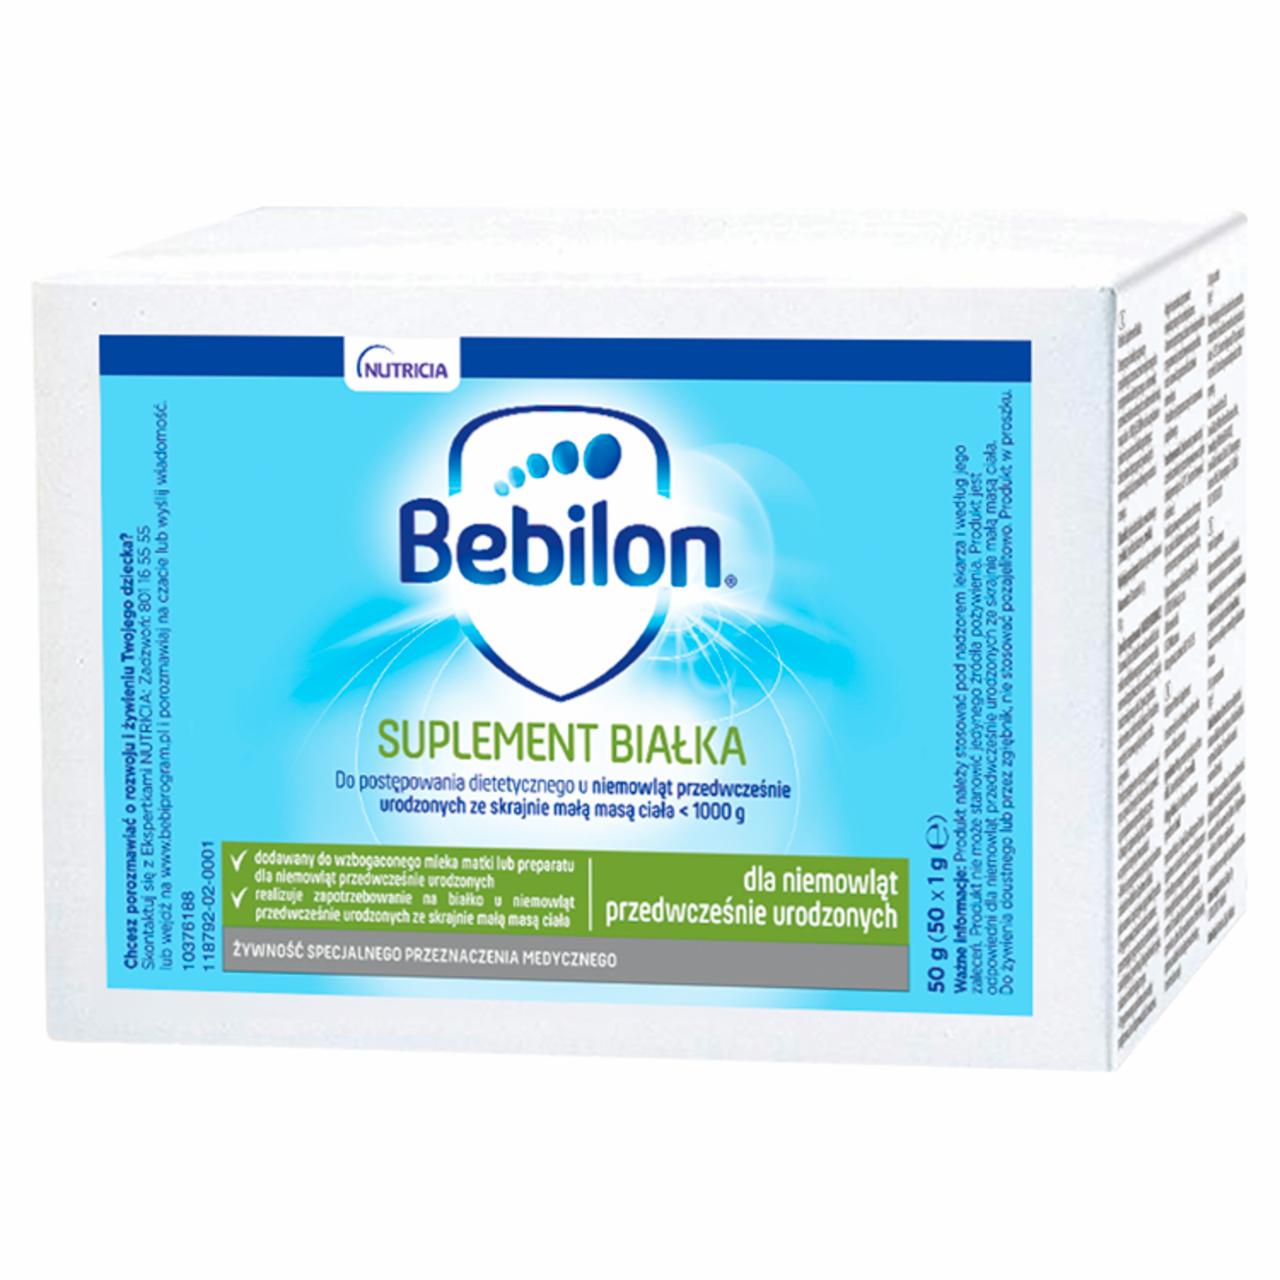 Zdjęcia - Bebilon Suplement białka Żywność specjalnego przeznaczenia medycznego 50 g (50 x 1 g)